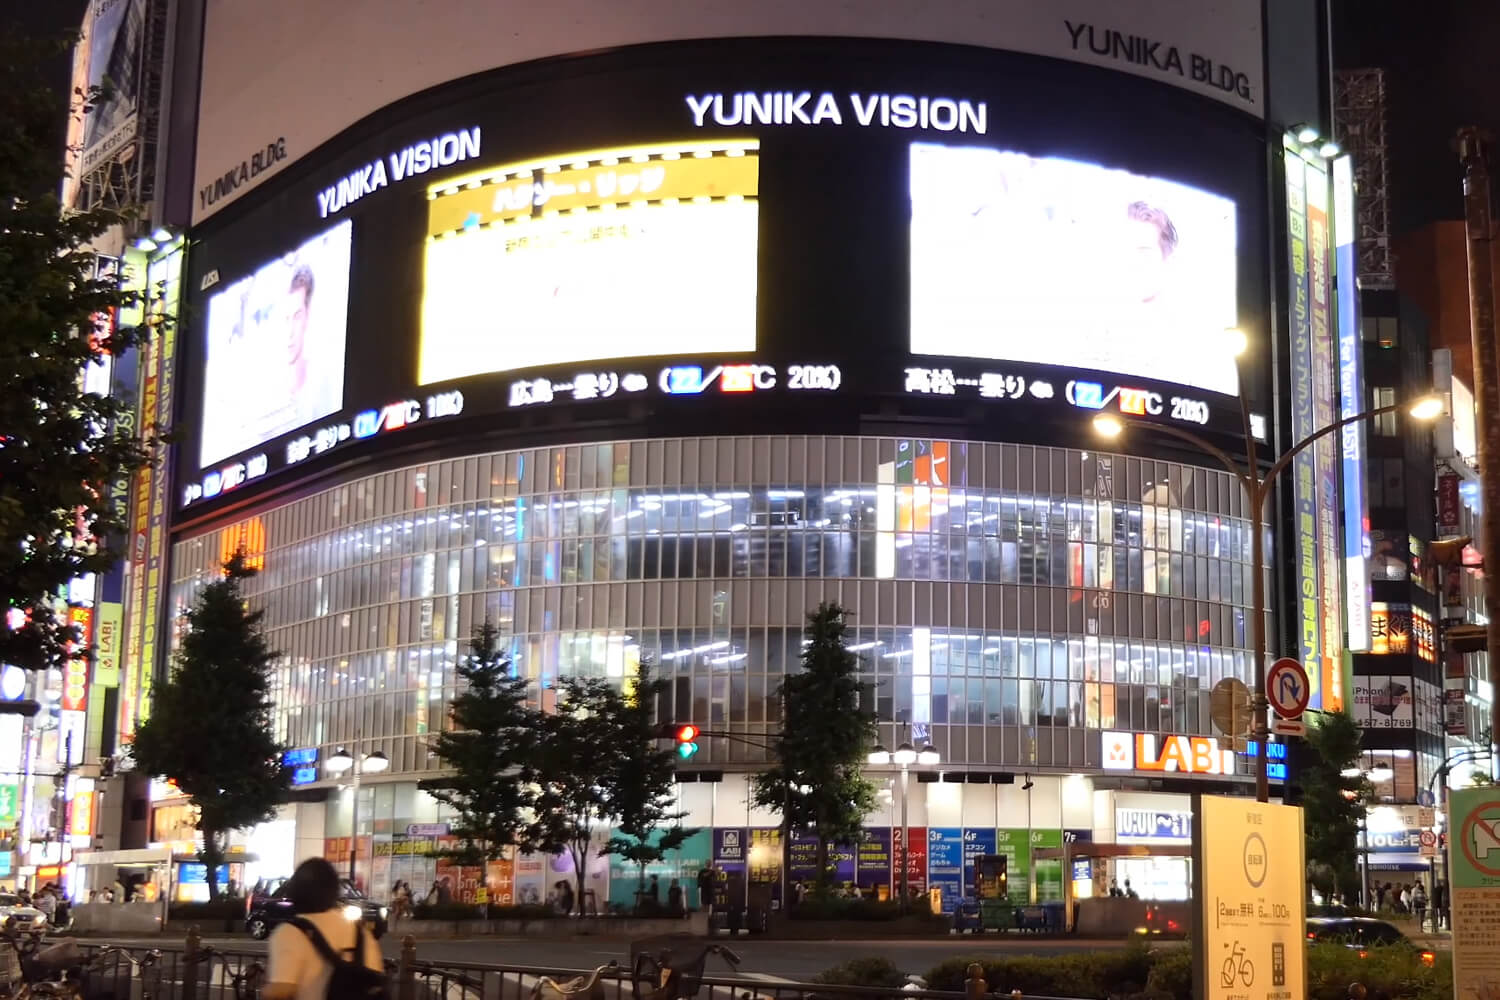 ド迫力！大型LEDビジョン×3面の“ユニカビジョン”は街頭ビジョンの可能性を広げています。「新宿三大ビジョン」